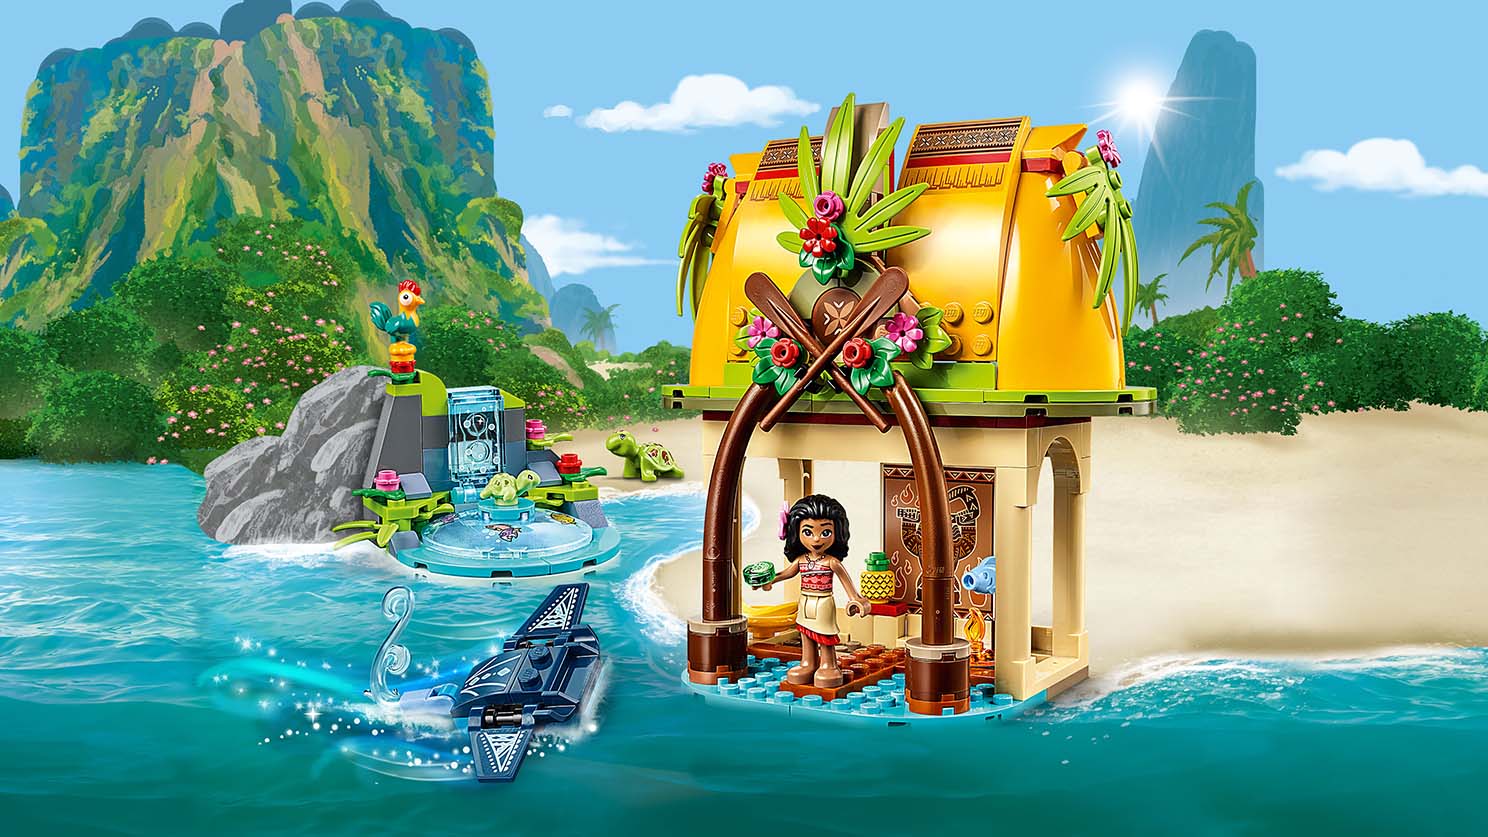 LEGO 43183 Disney Moana's Home Island FREE SHIPPING